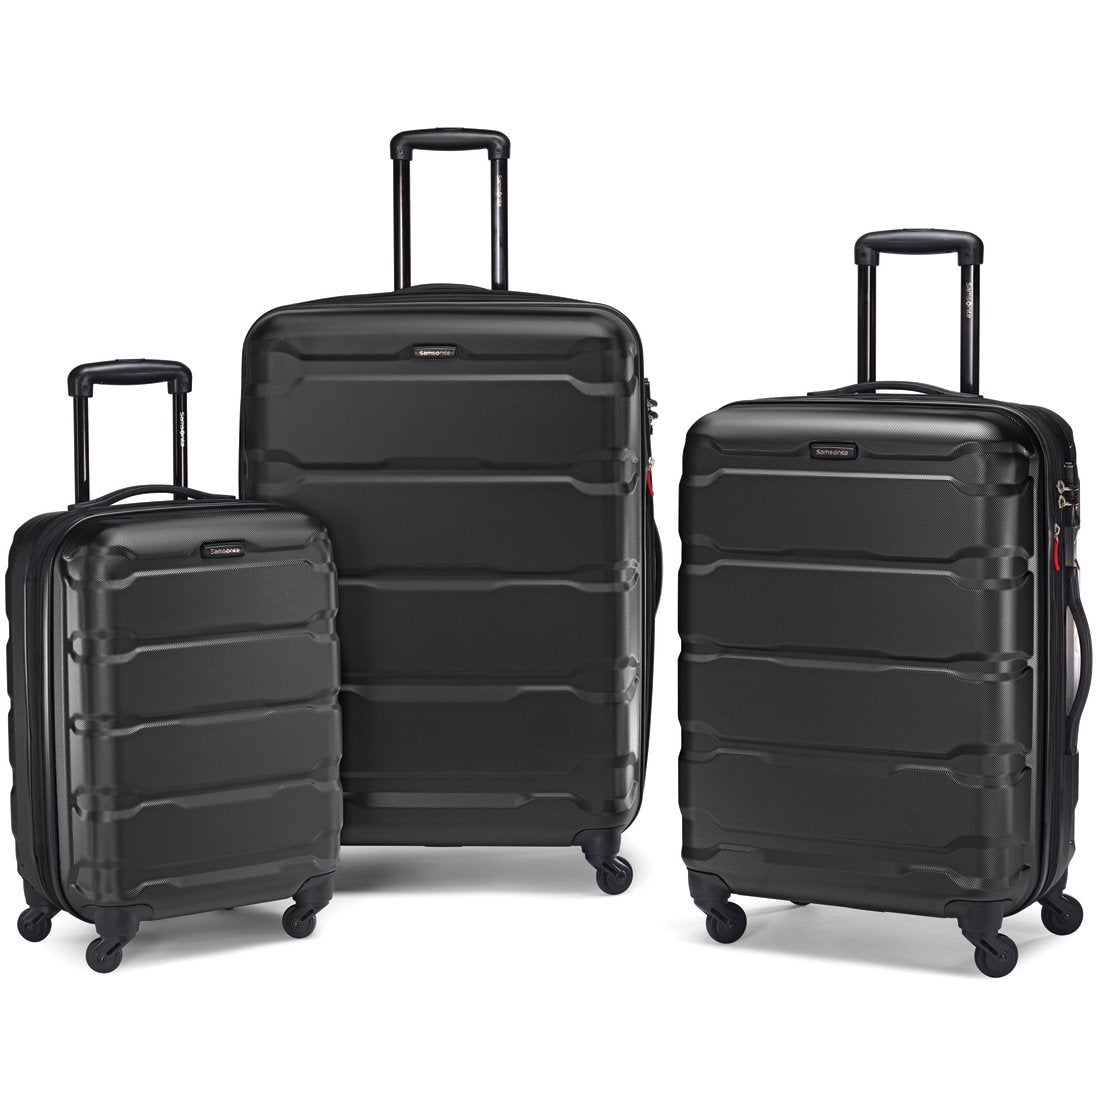 Elite Luggage Omni 3-Piece Hardside Spinner Luggage Set, Black EL09075K -  The Home Depot